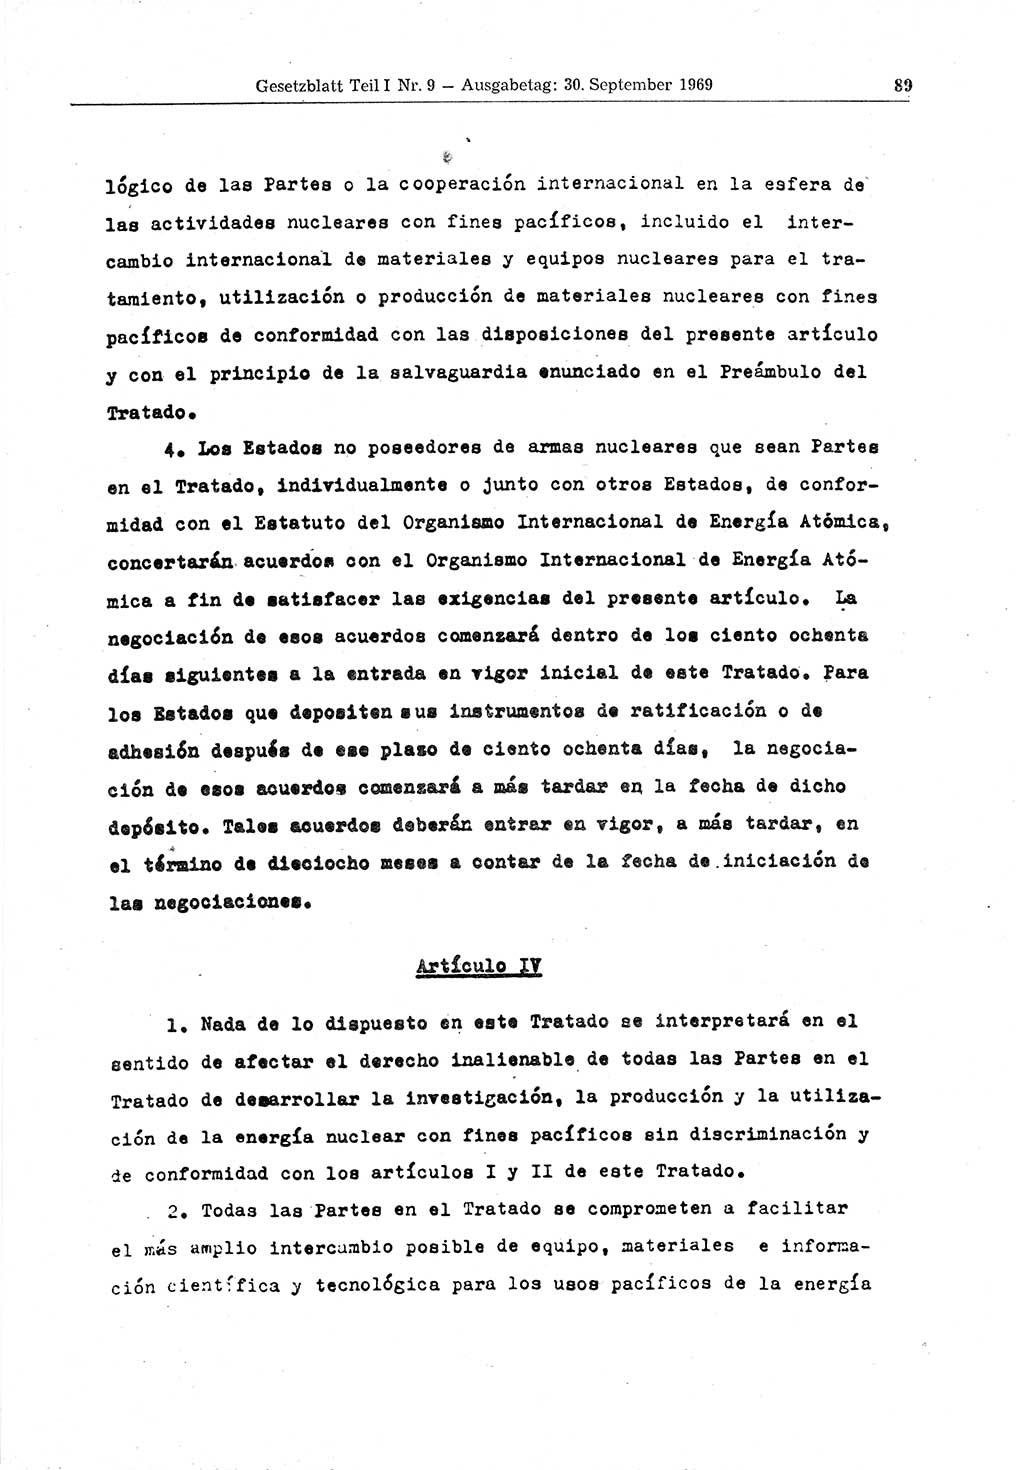 Gesetzblatt (GBl.) der Deutschen Demokratischen Republik (DDR) Teil Ⅰ 1969, Seite 89 (GBl. DDR Ⅰ 1969, S. 89)